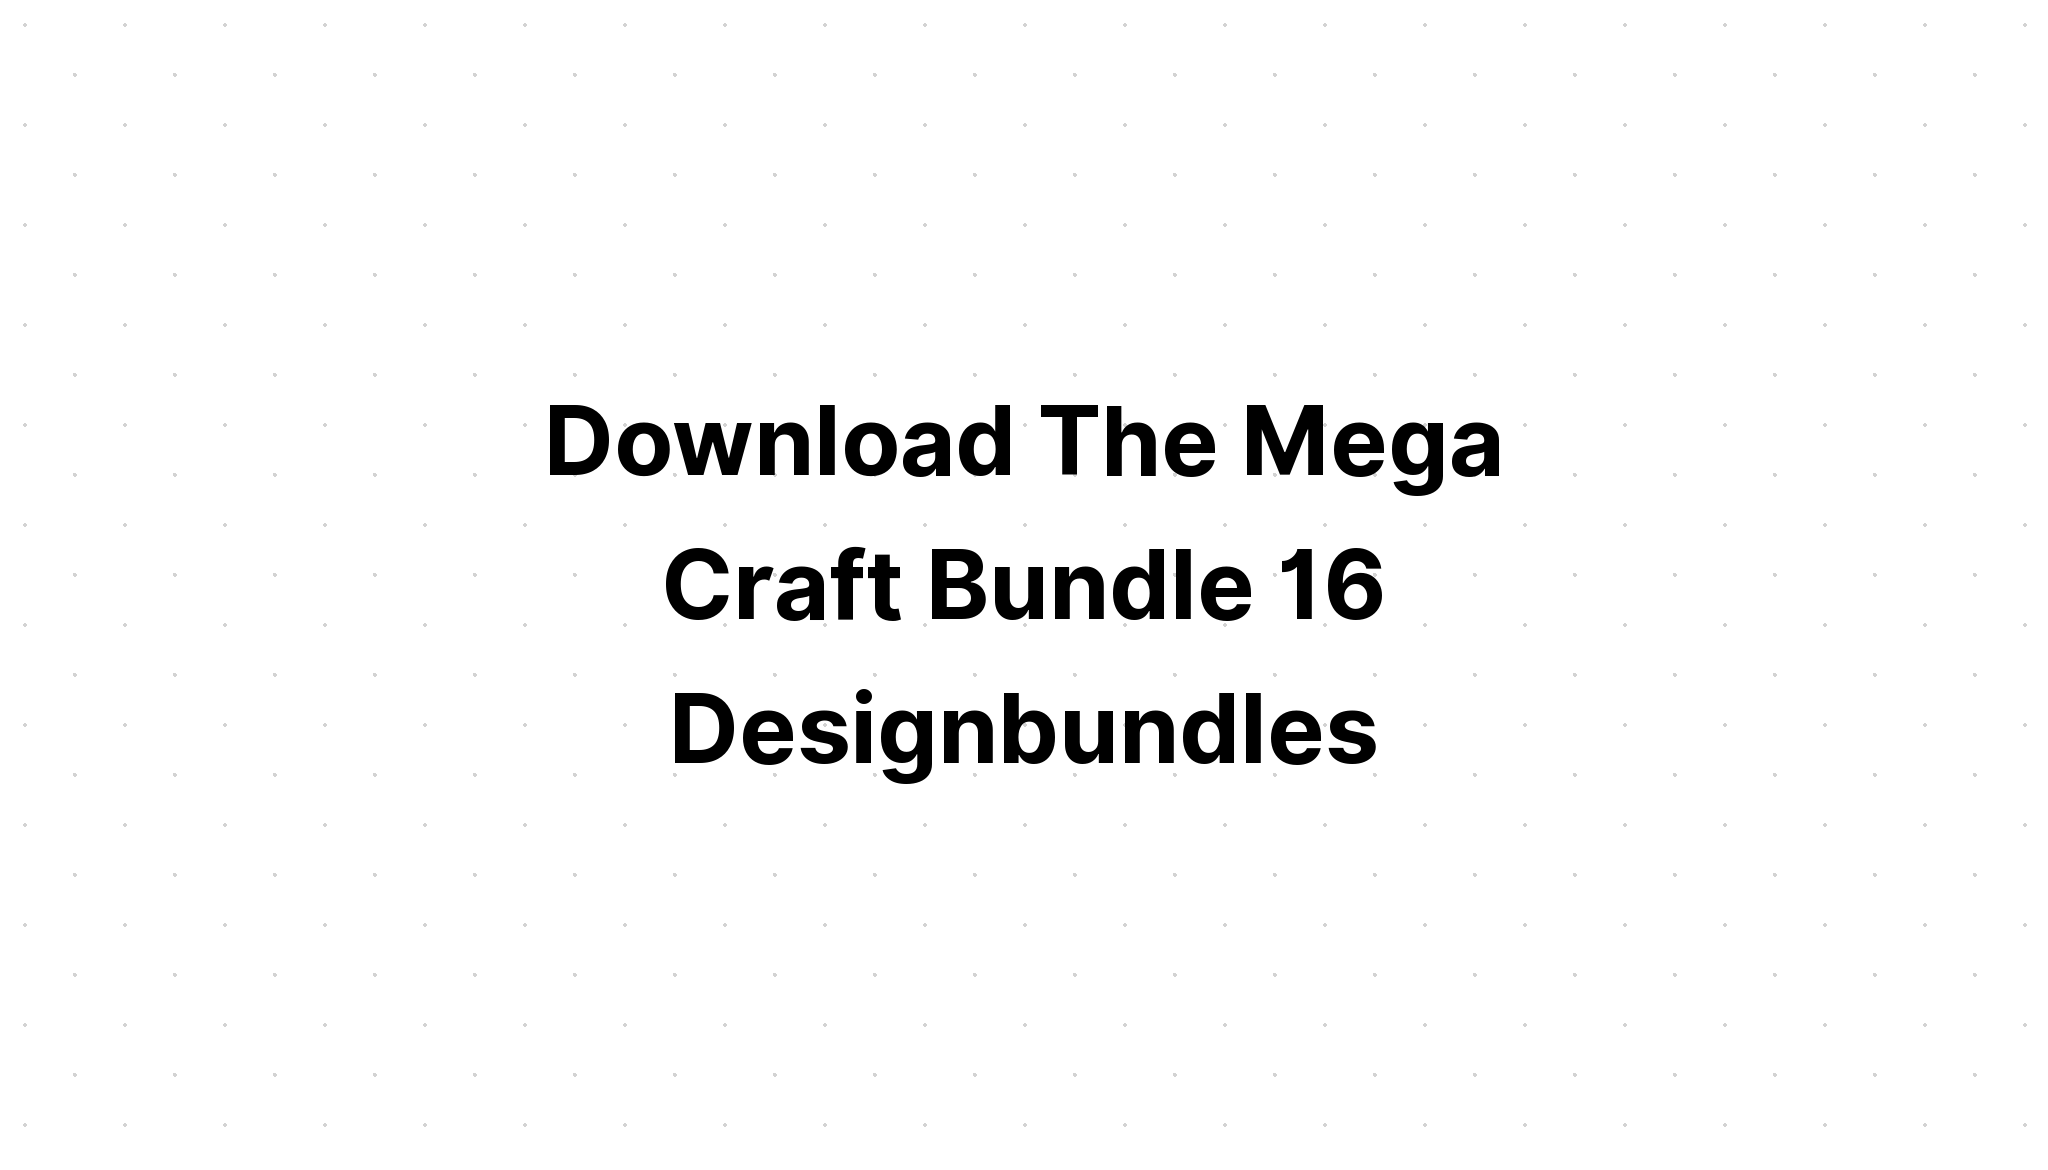 Download The Big Bundle SVG File